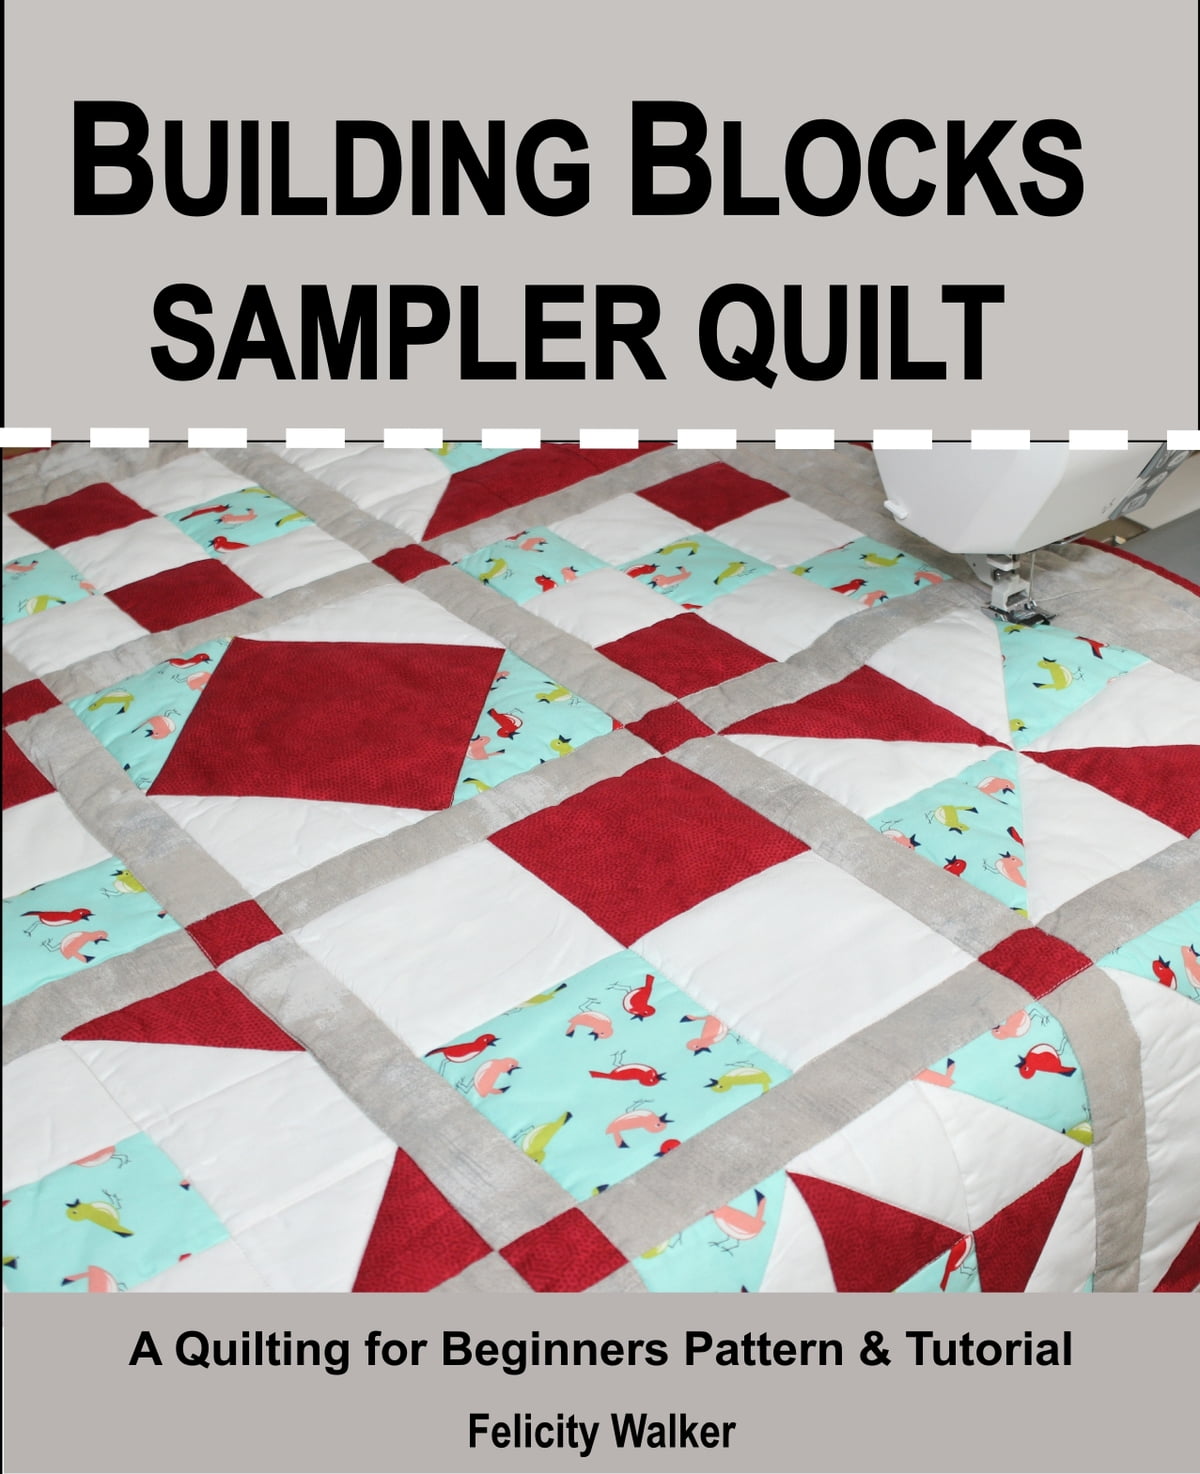 Assembling The Quilt Block